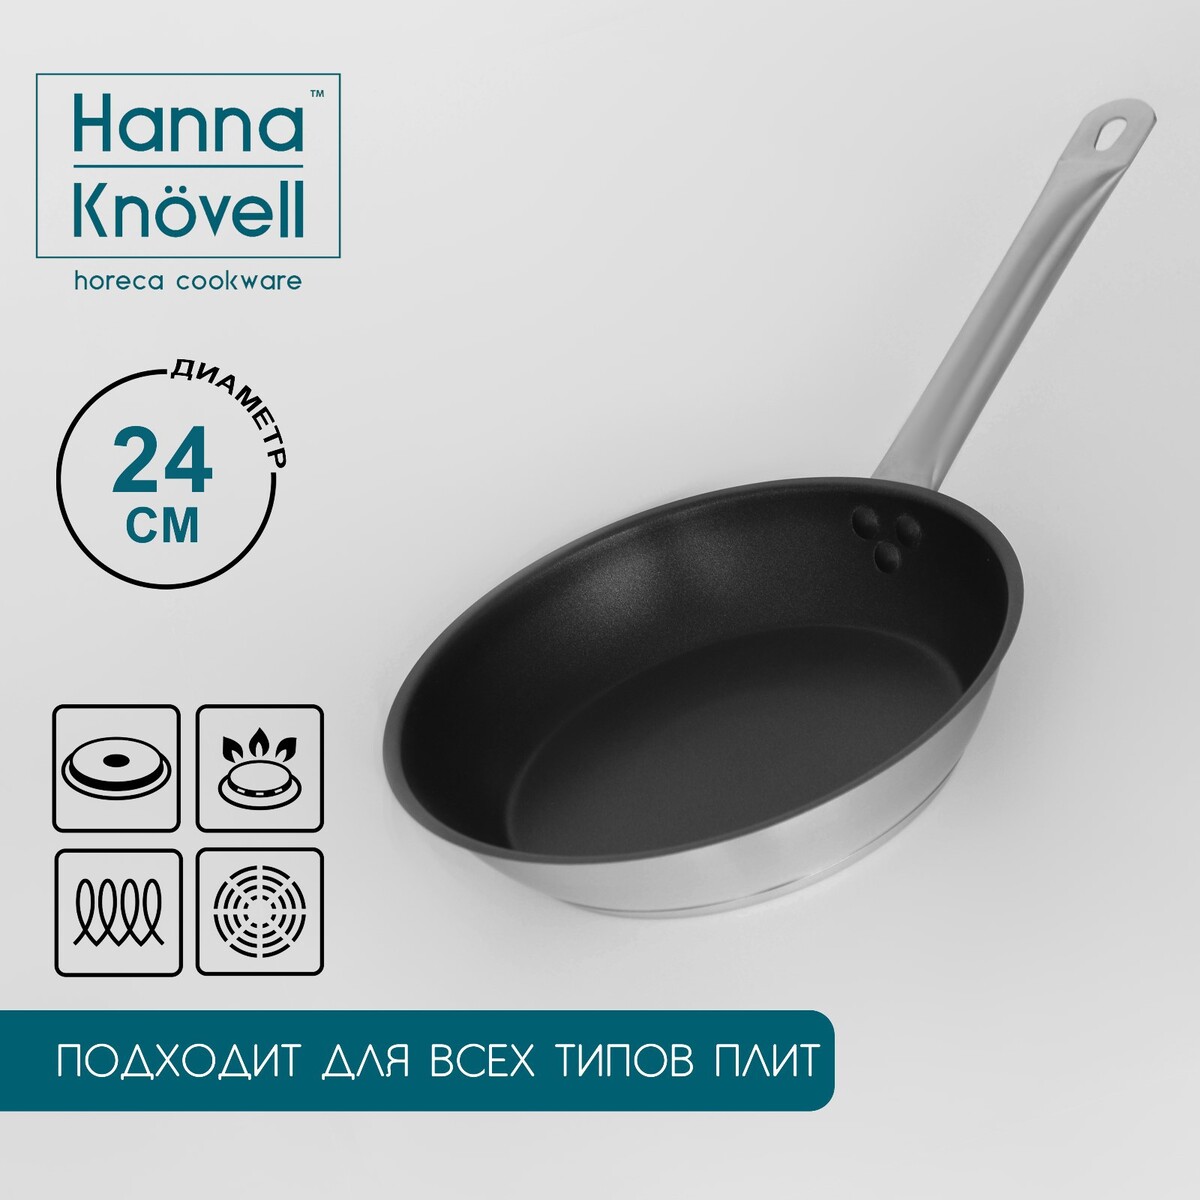 Сковорода из нержавеющей стали hanna knövell, d=24 см, h=5,5, толщина стенки 0,6 мм, длина ручки 21,5 см, антипригарное покрытие, индукция